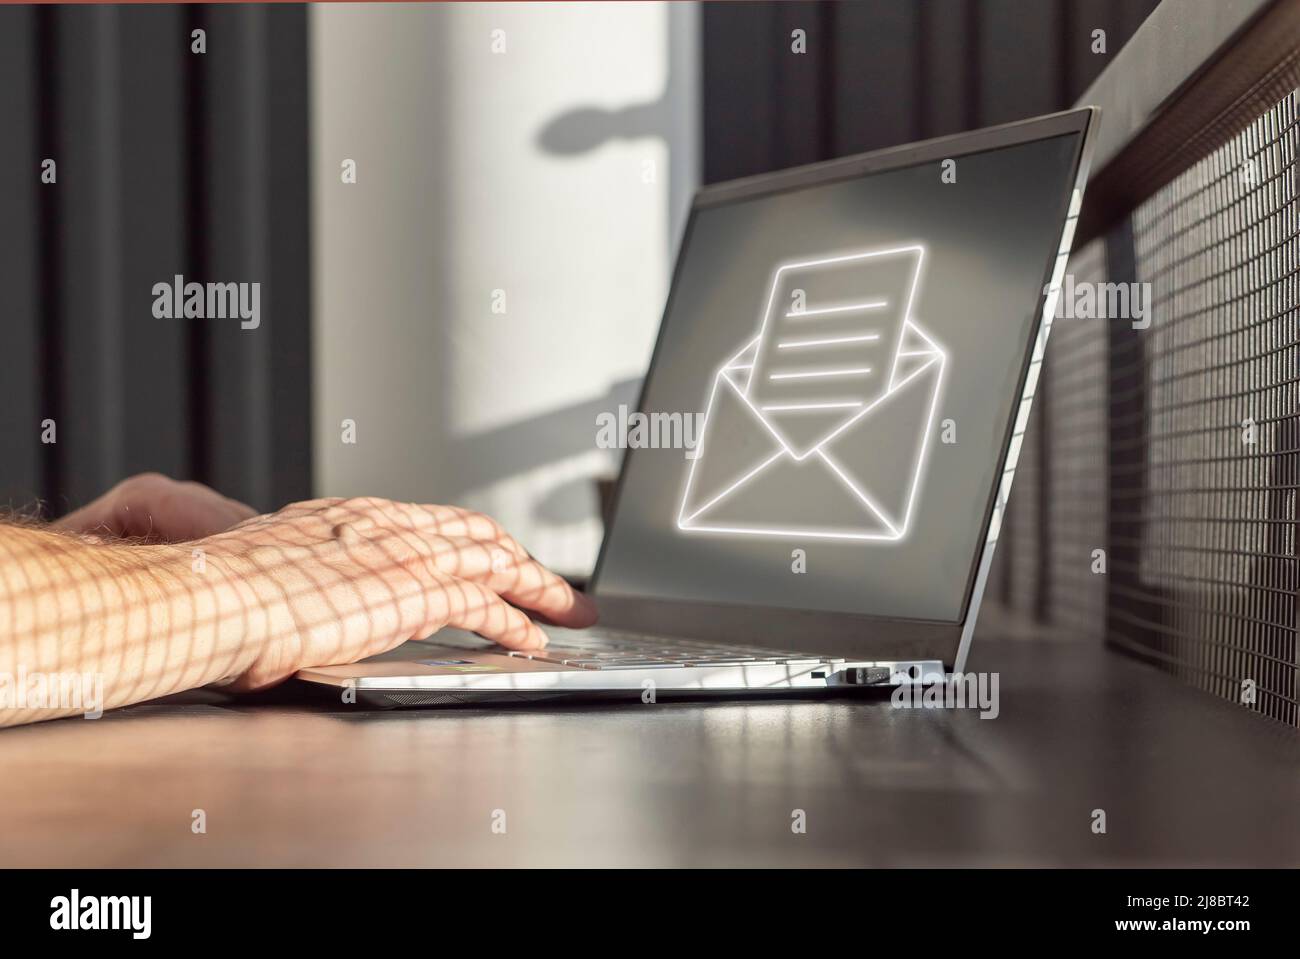 Spam-E-Mail. Mann, der Junk-E-Mails, unerwünschte Nachrichten und Werbung für Geldbetrug erhält, während er an einem Laptop arbeitet. Hände auf der Tastatur Nahaufnahme. Hochwertige Fotos Stockfoto